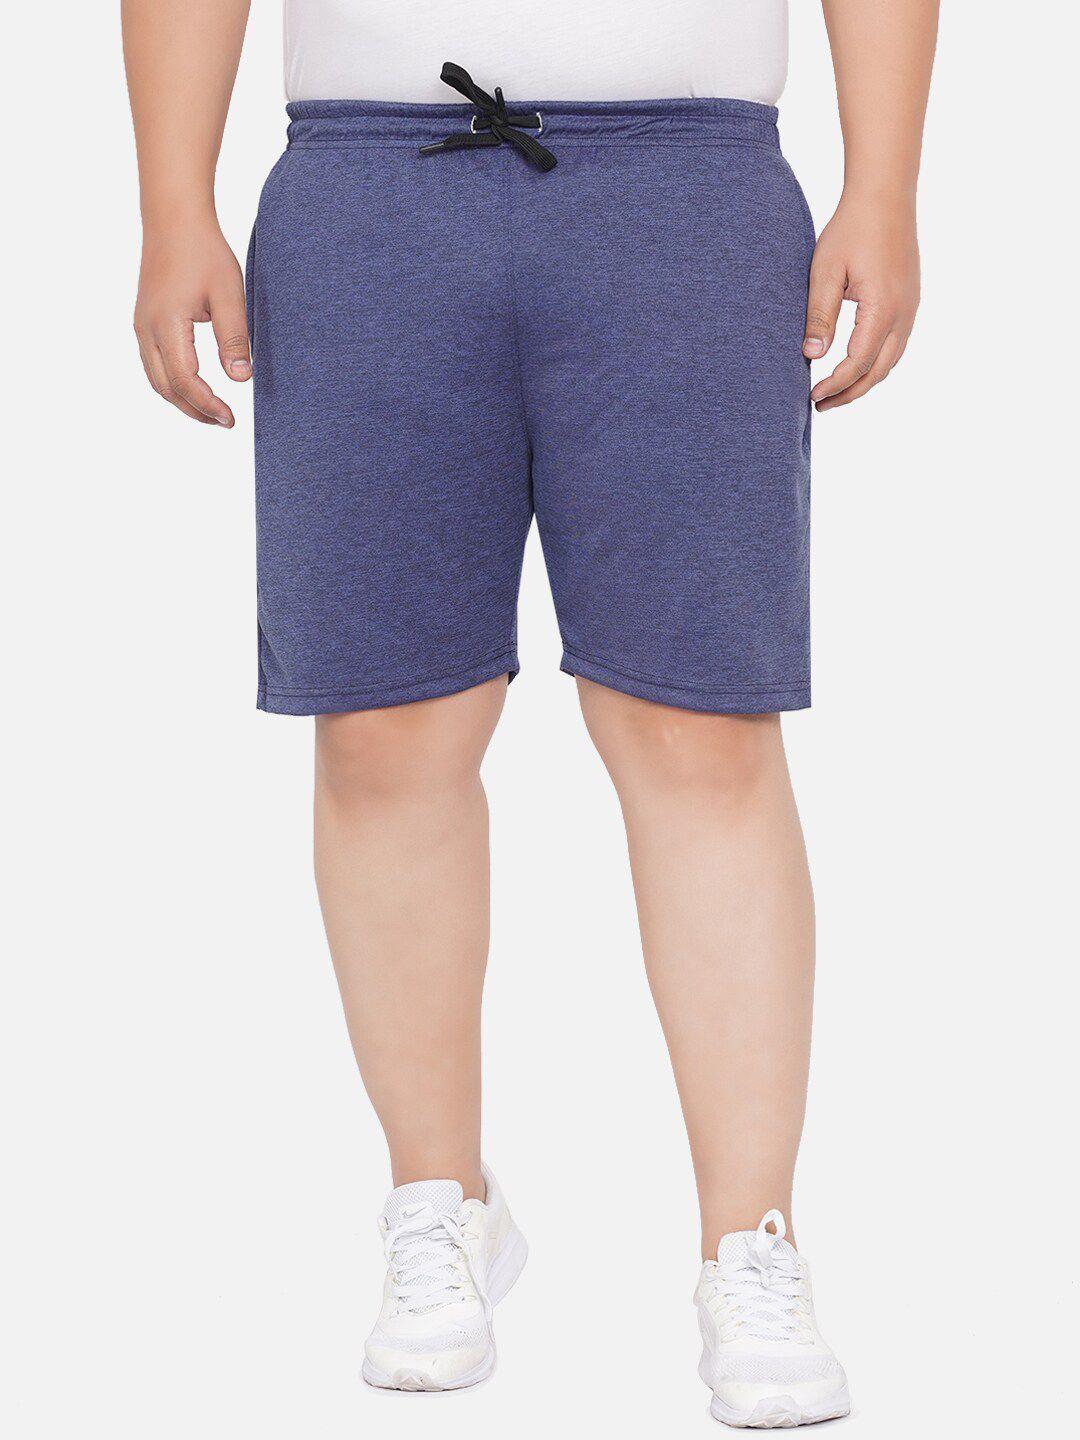 santonio plus size men mid-rise pure cotton shorts